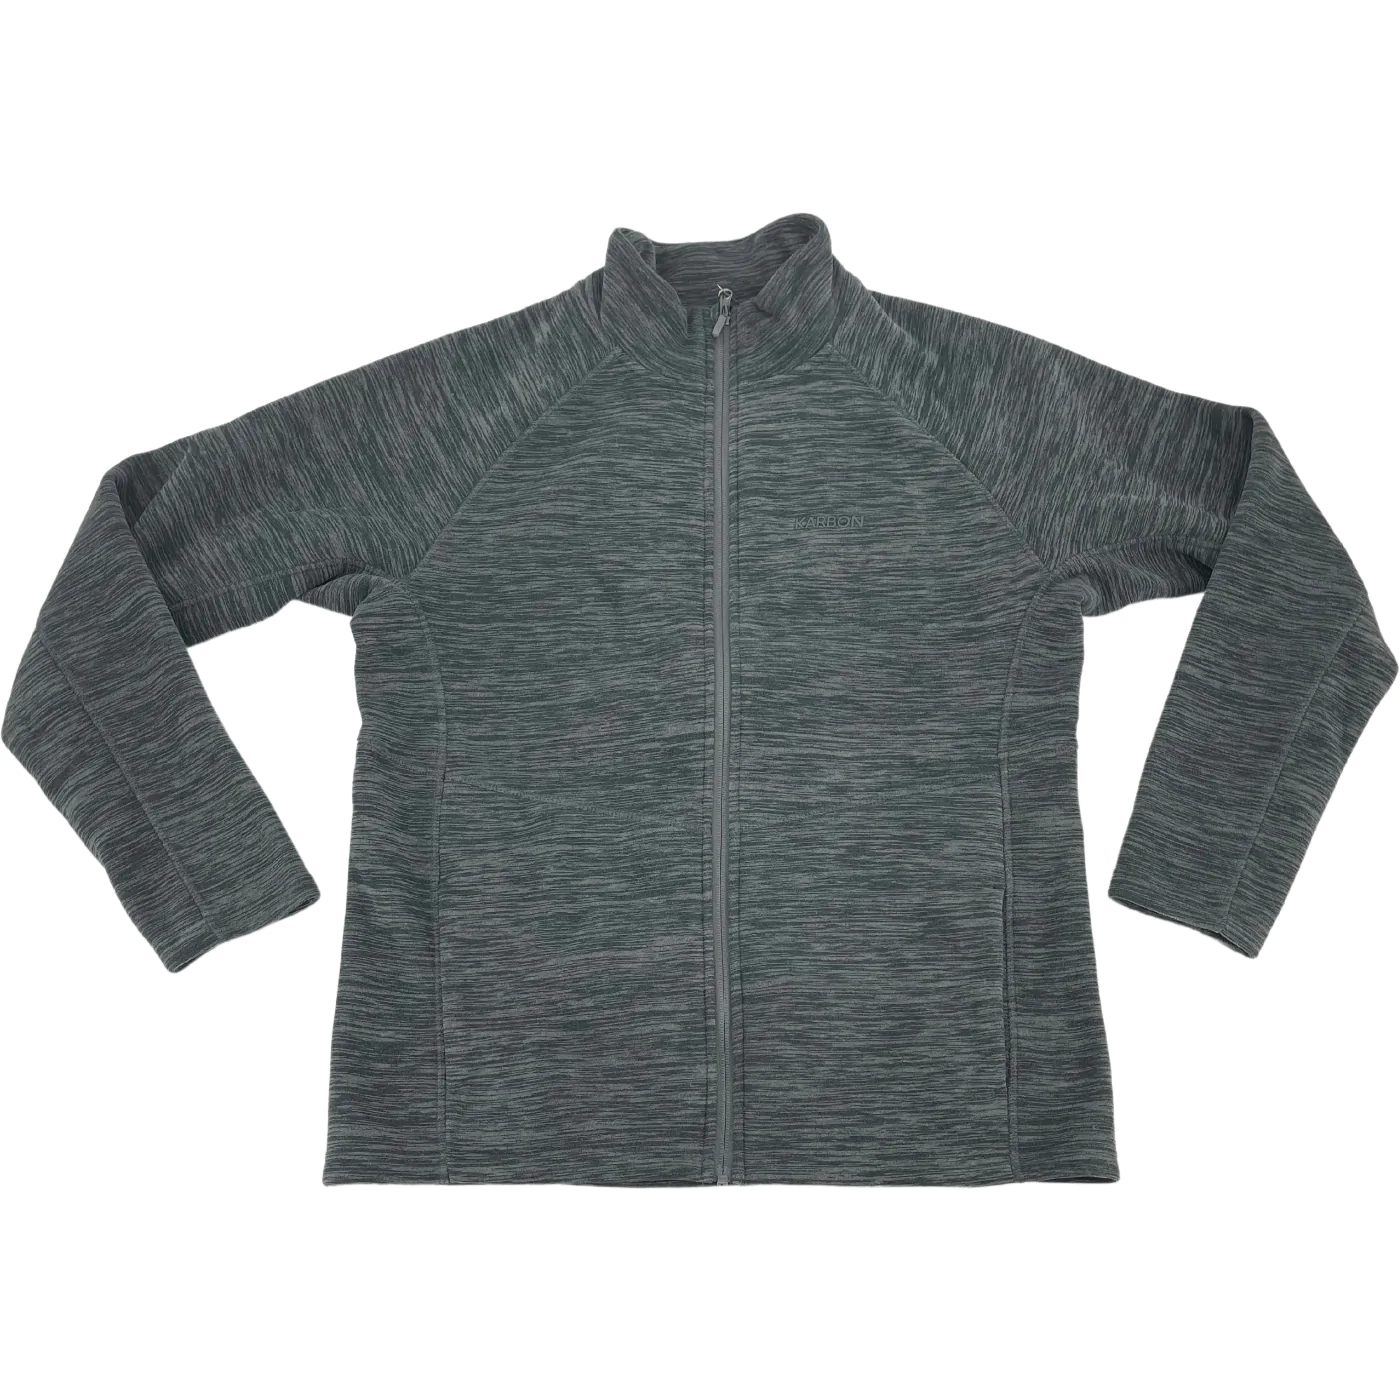 Karbon Men's Zip Up Sweater / Grey / Size Medium